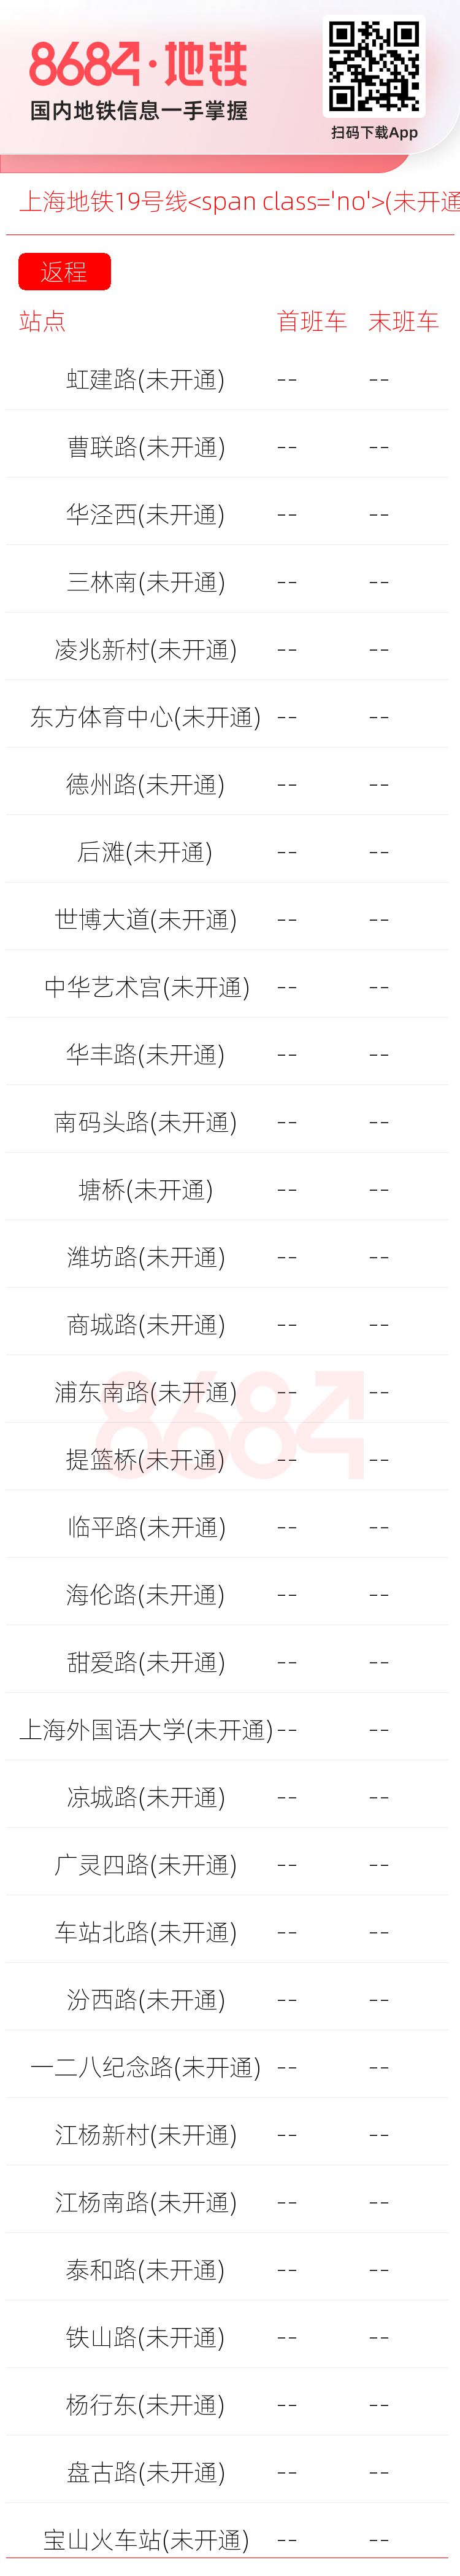 上海地铁19号线<span class='no'>(未开通)</span>运营时间表